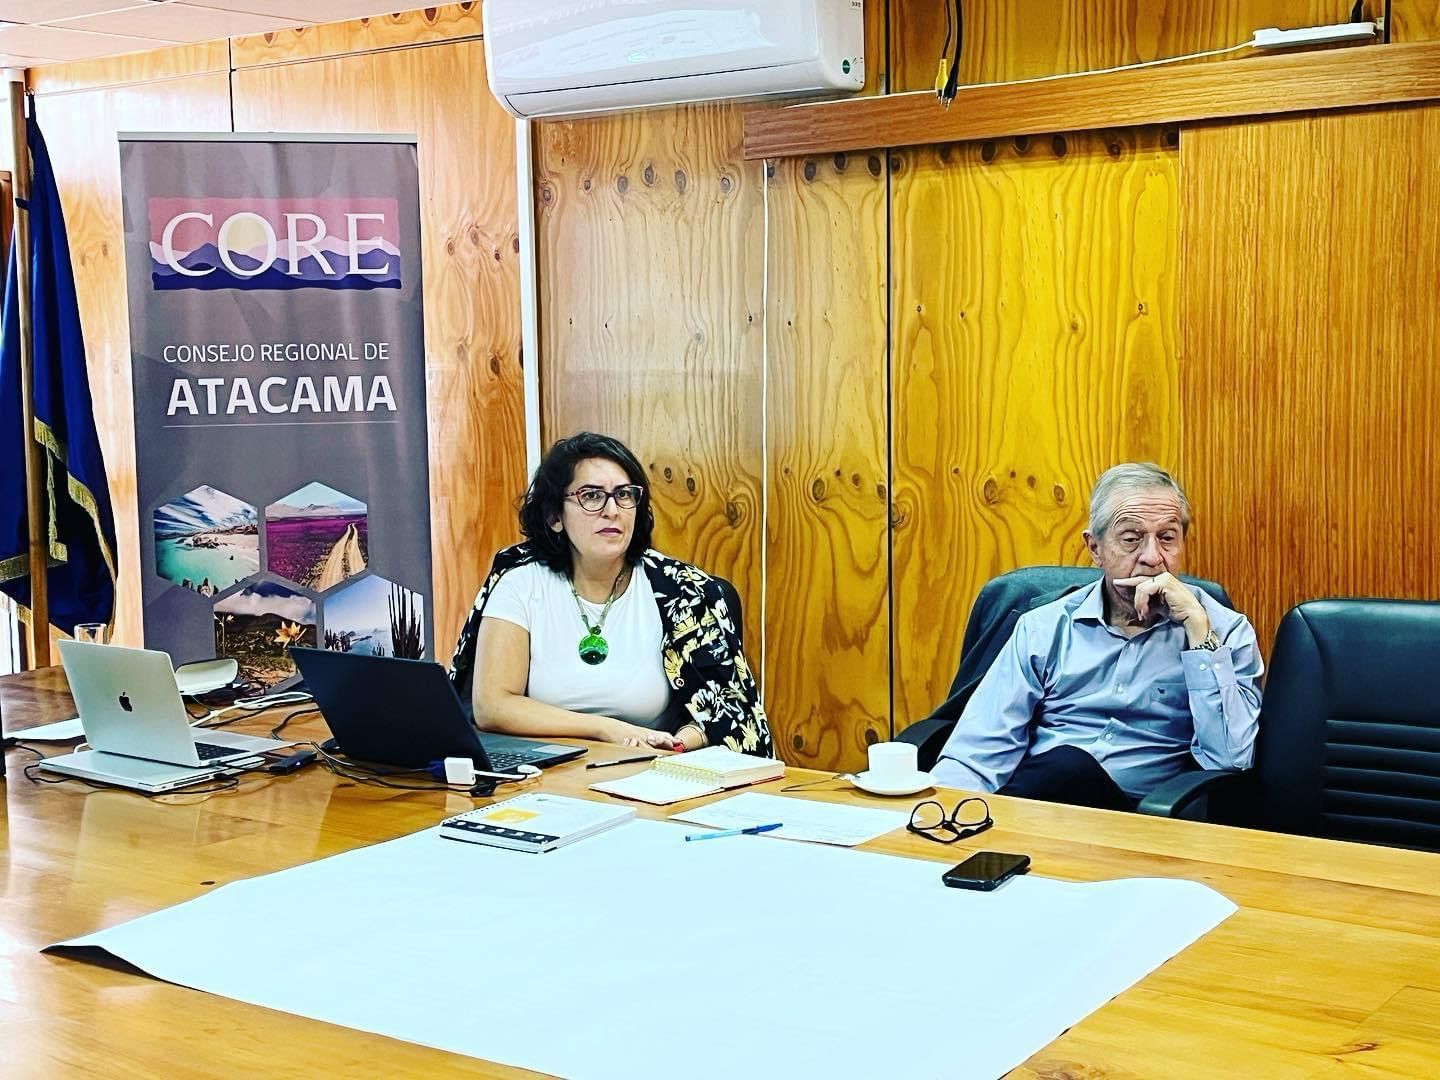 Equipo técnico de la ERDA se reunió con el Consejo Regional de Atacama (Core) para reforzar los resultados de la estrategia